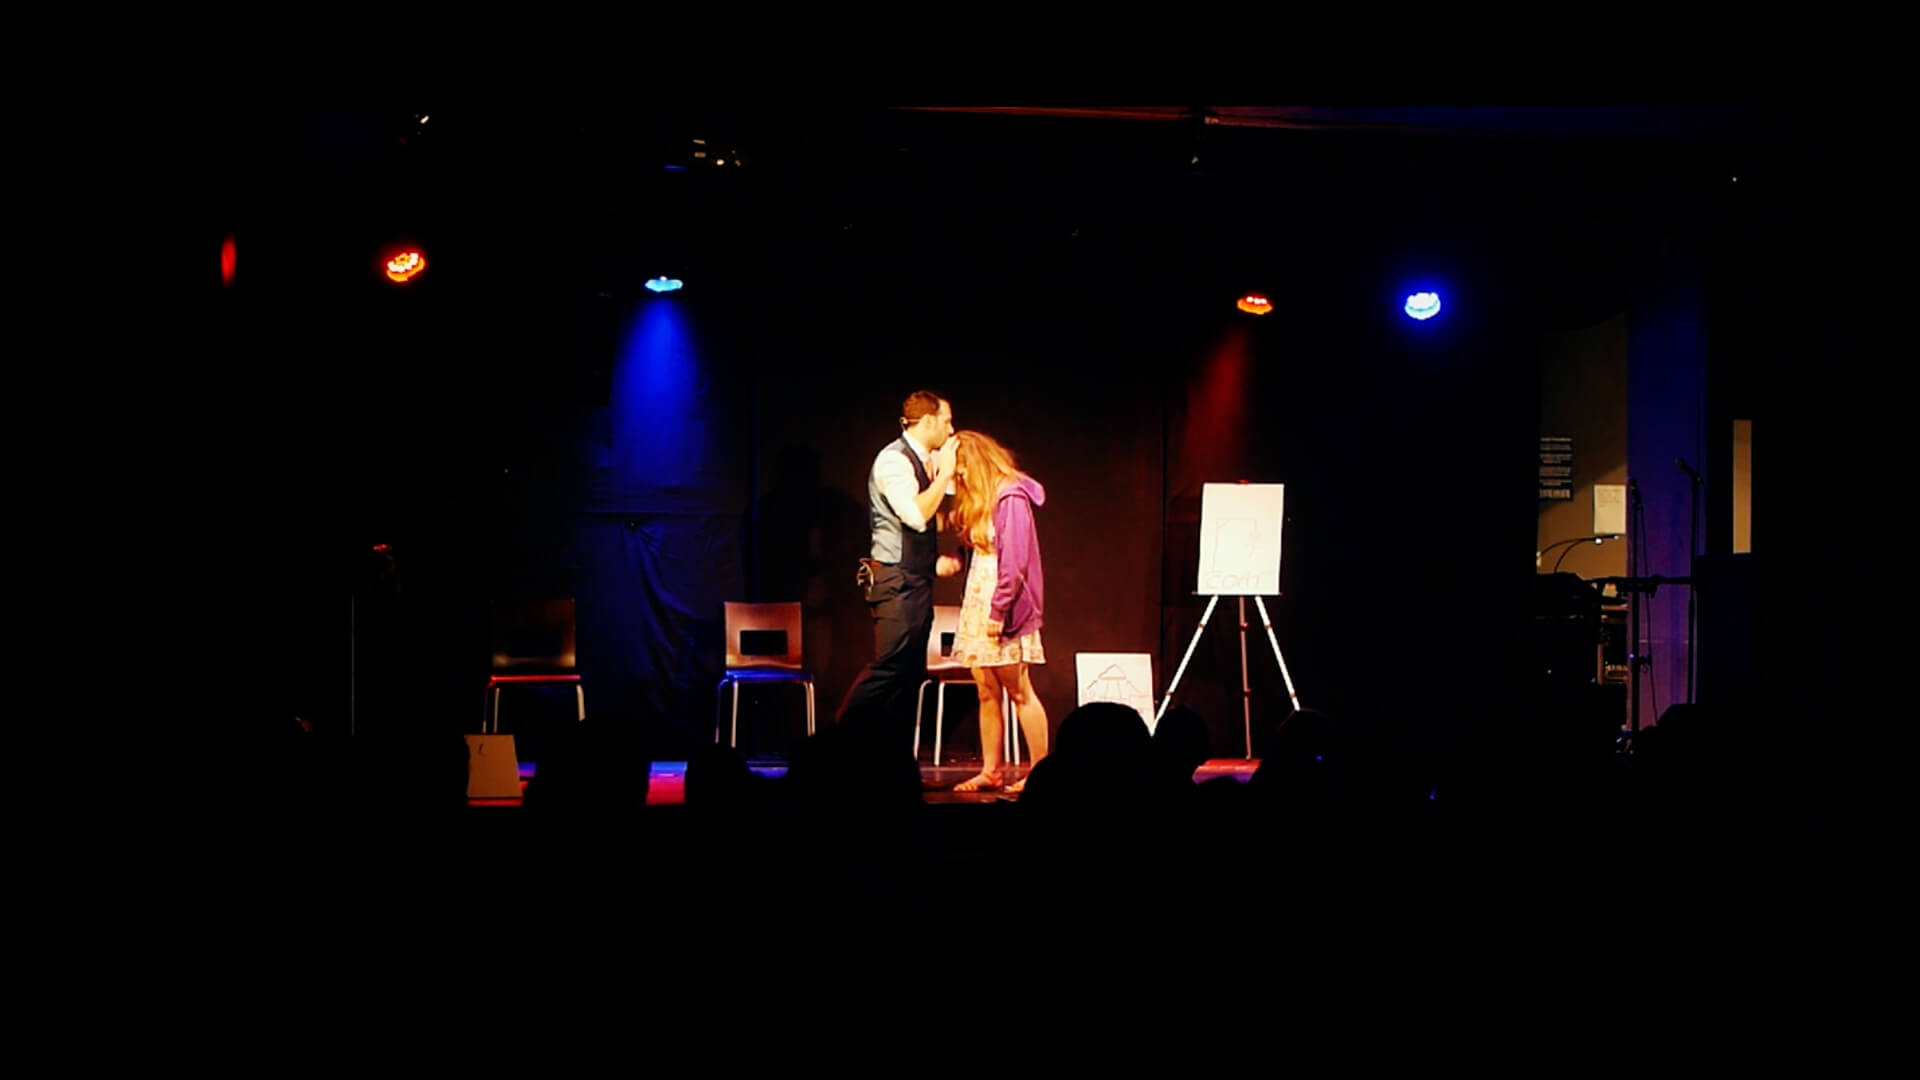 Aaron hypnotising lady on stage at edinburgh fringe magic show